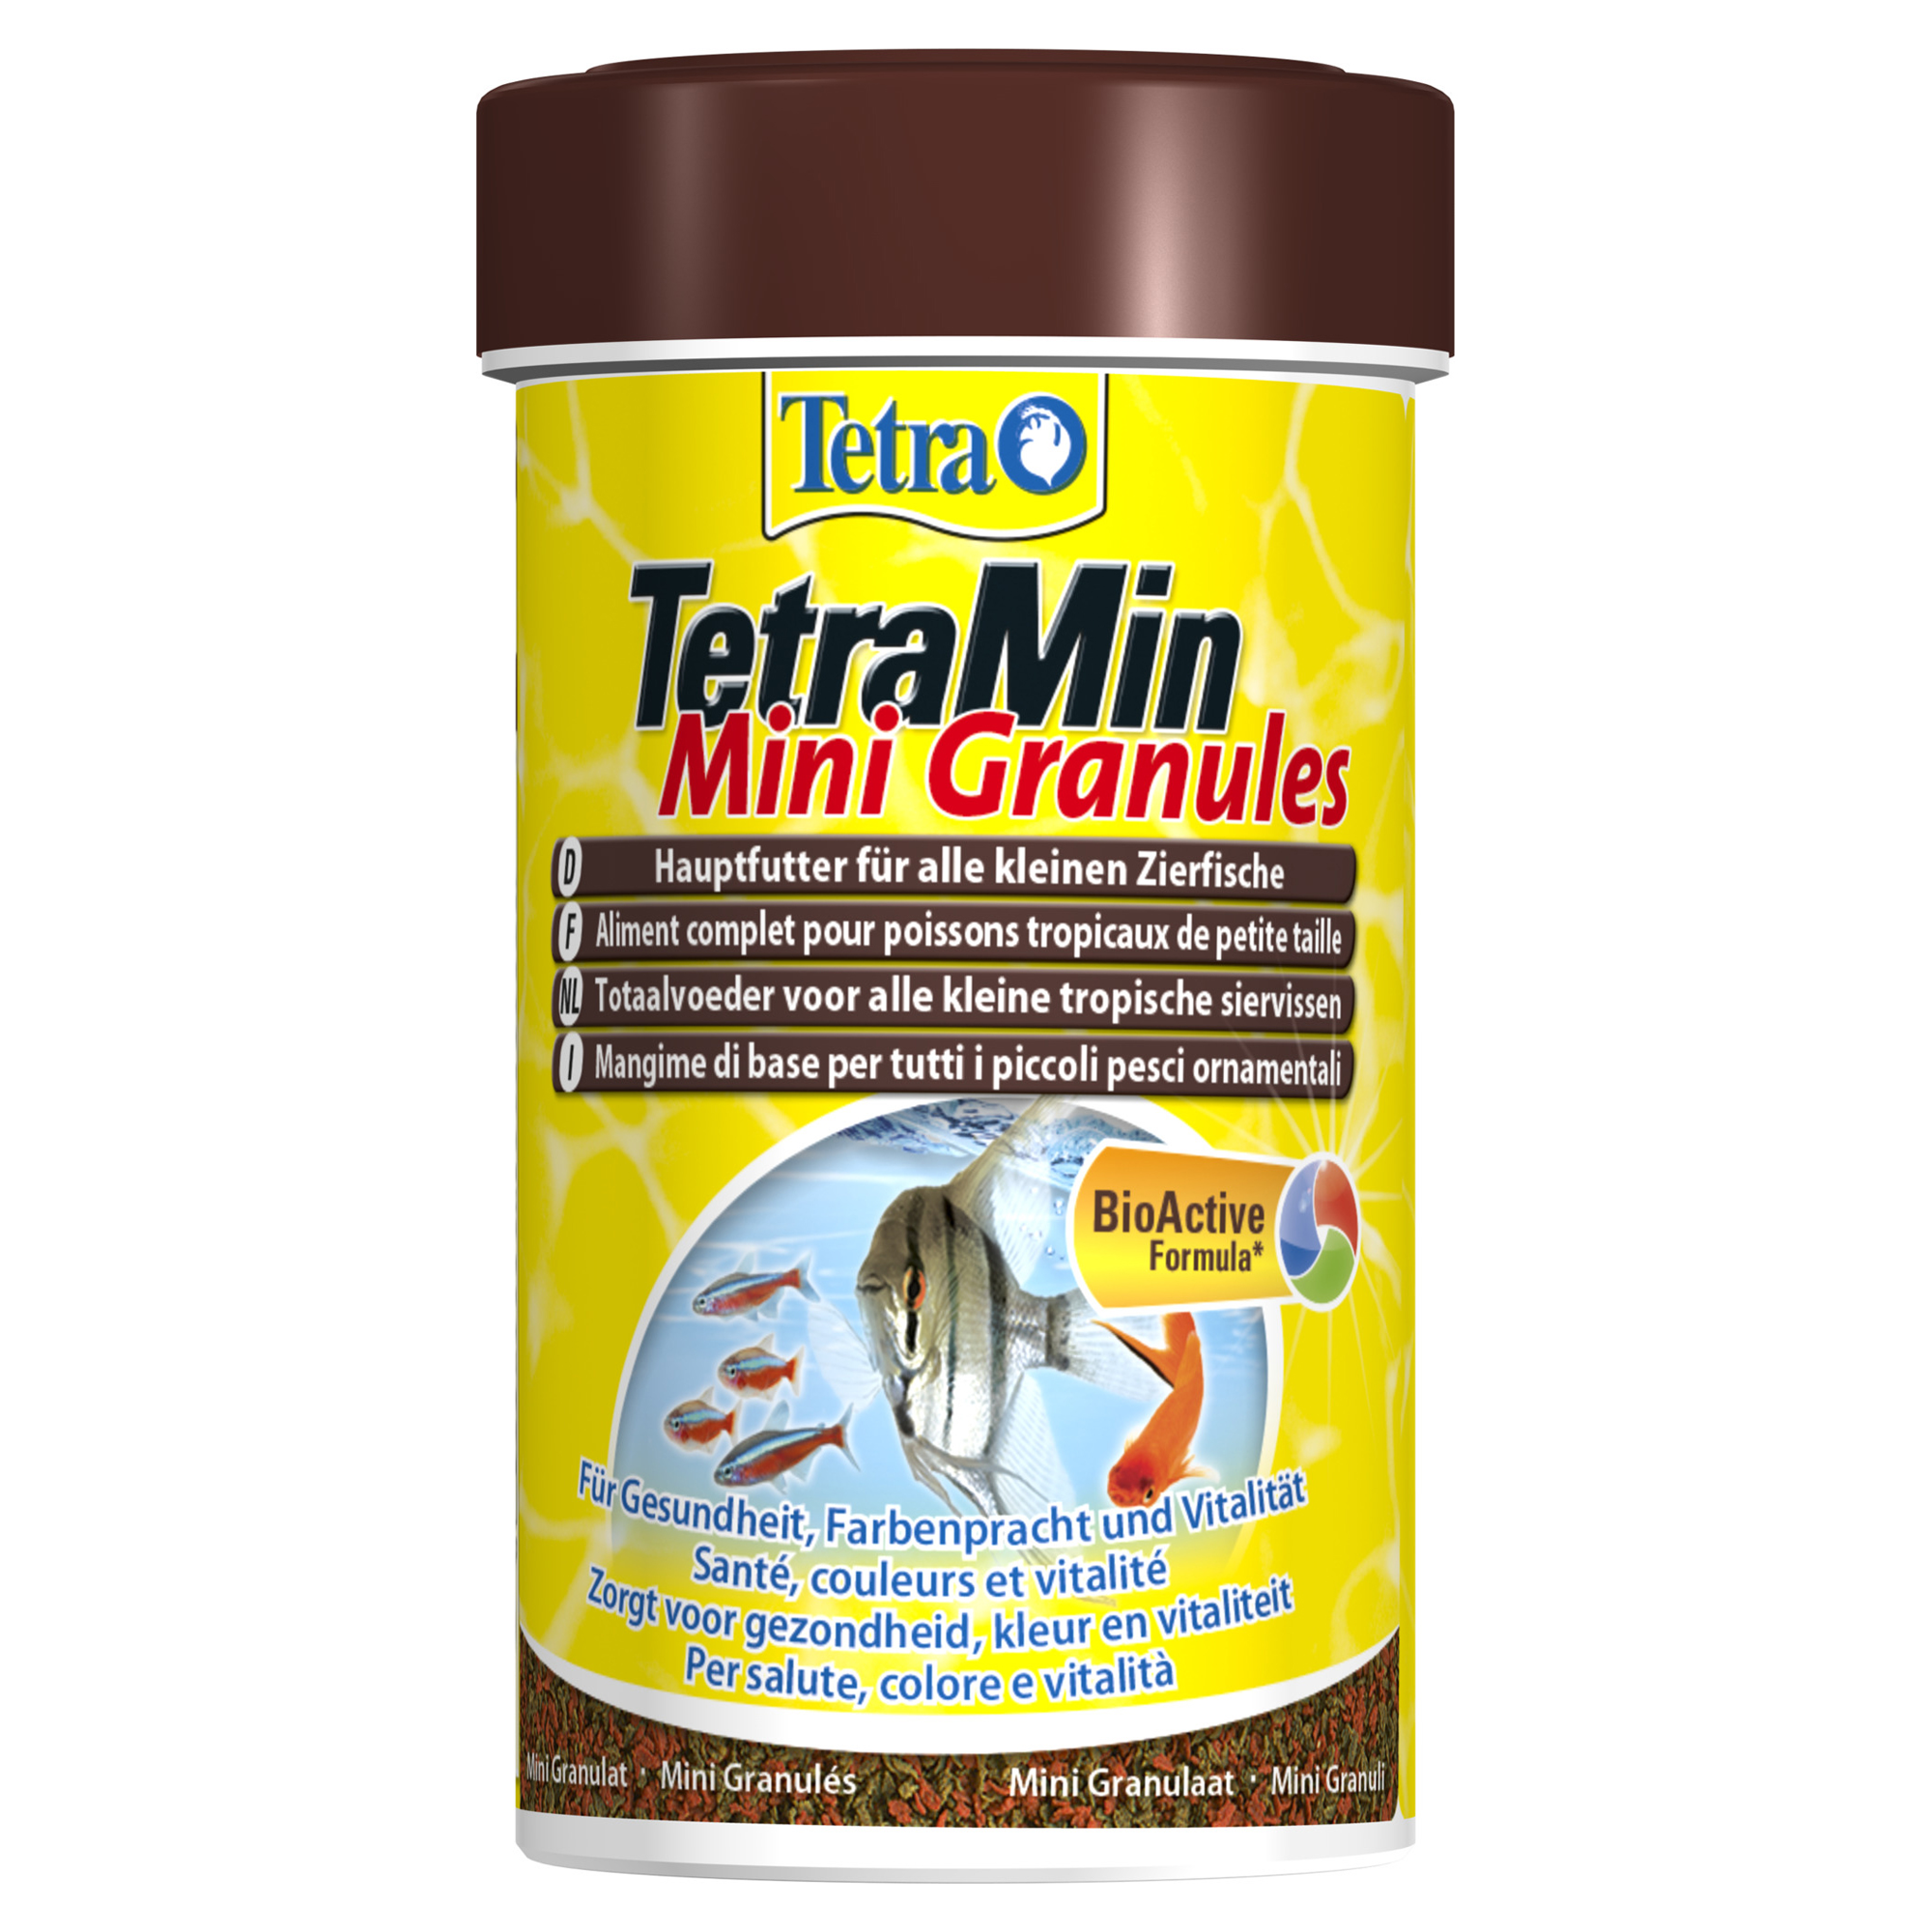 Fischfutter "TetraMin" Mini Granules 45 g + product picture